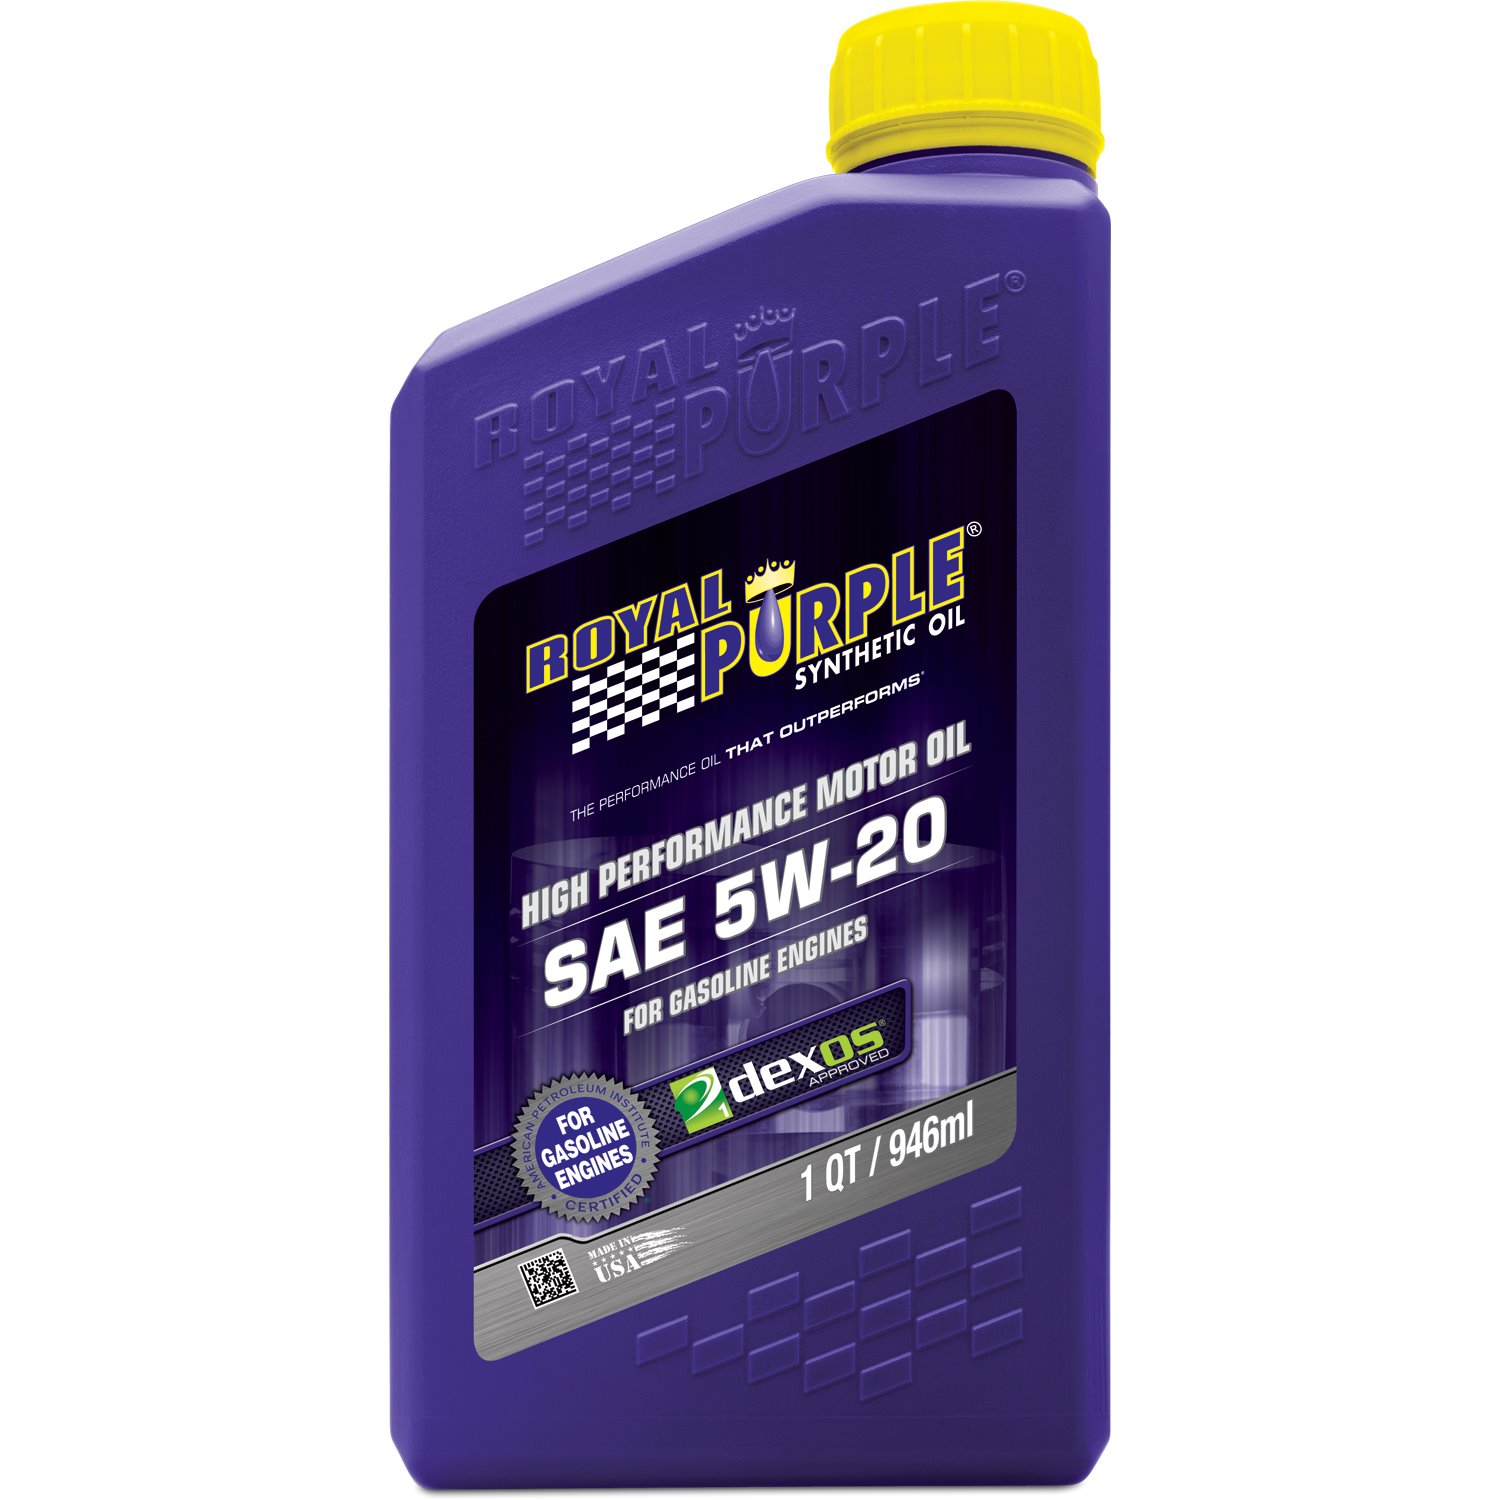 Royal Purple SAE 5W20 Syn SN GF-5 - 6 Quart Case